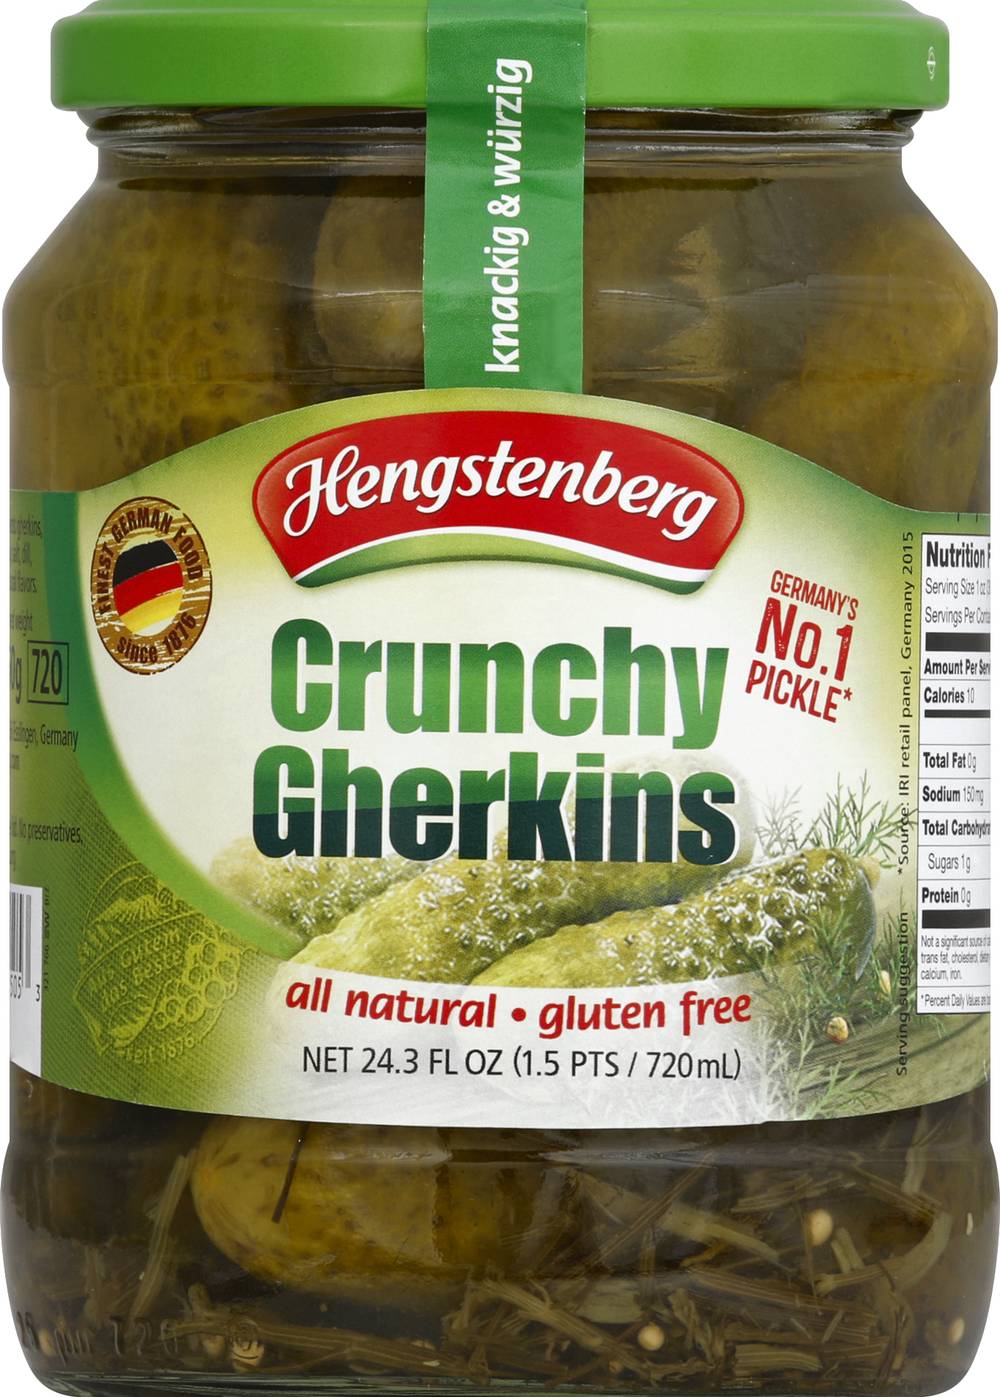 Hengstenberg Gluten Free Crunchy Gherkins Pickles (24.3 fl oz)